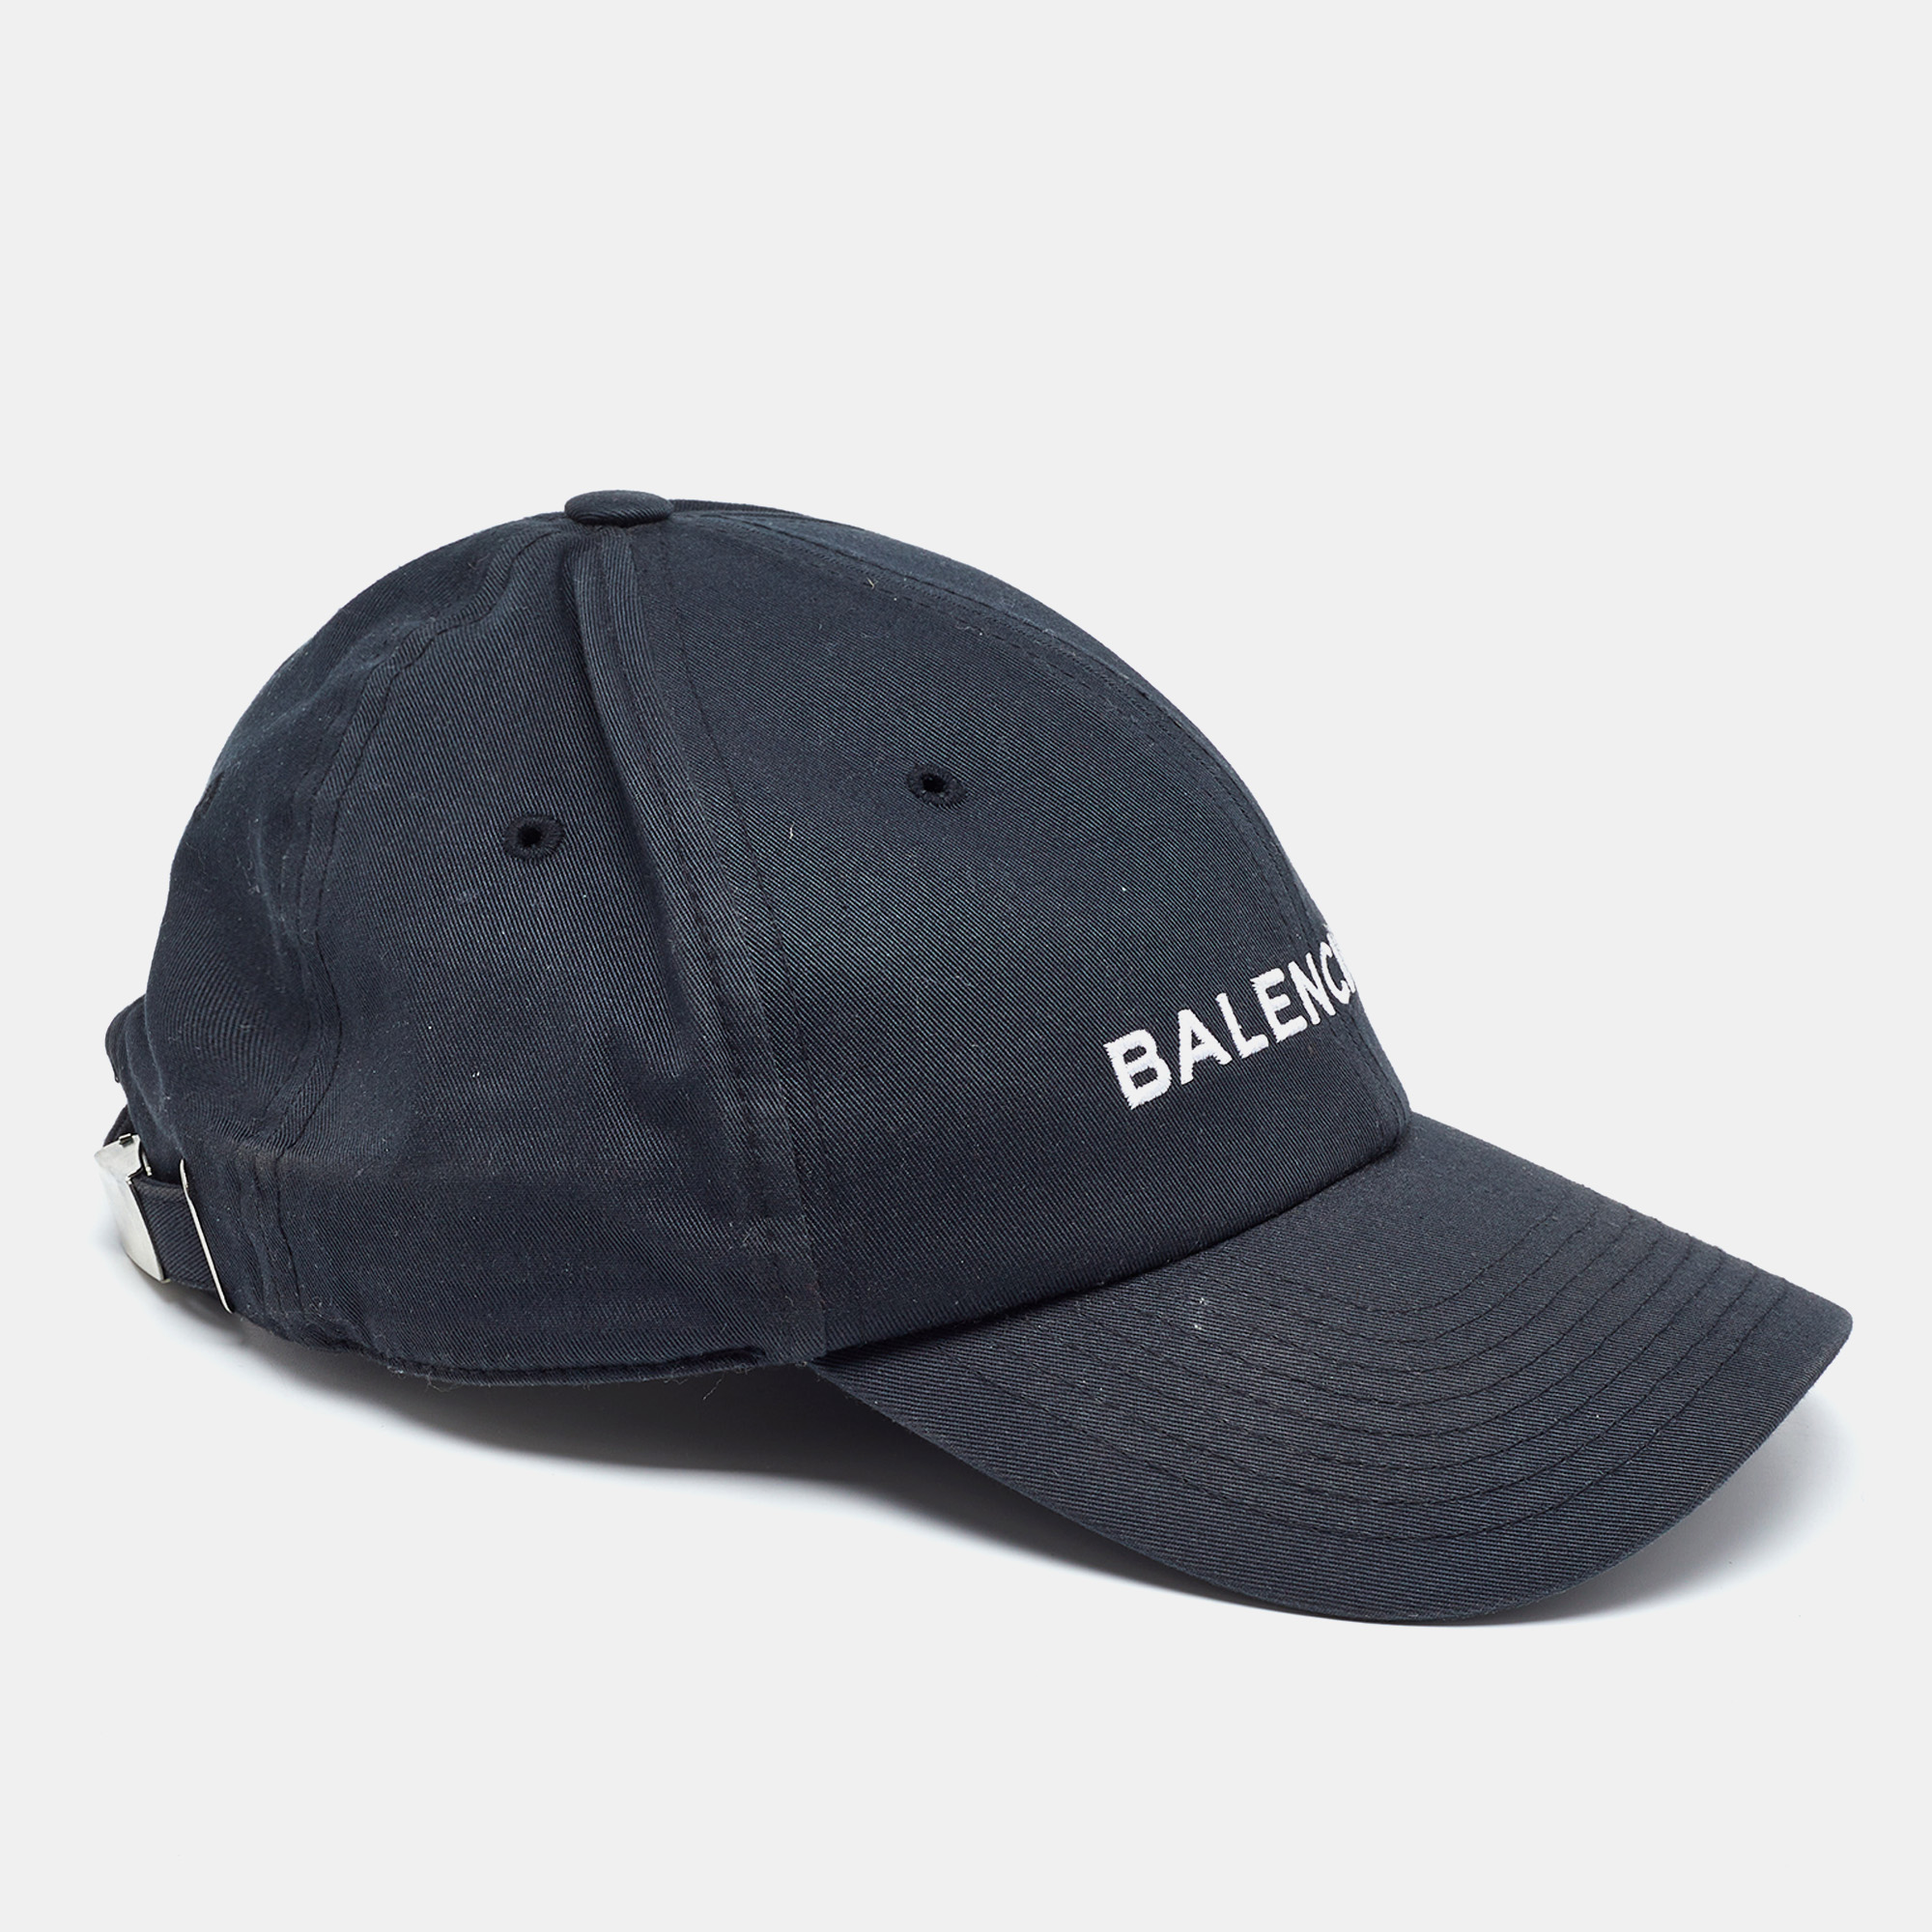 Balenciaga black logo embroidered cotton baseball cap l